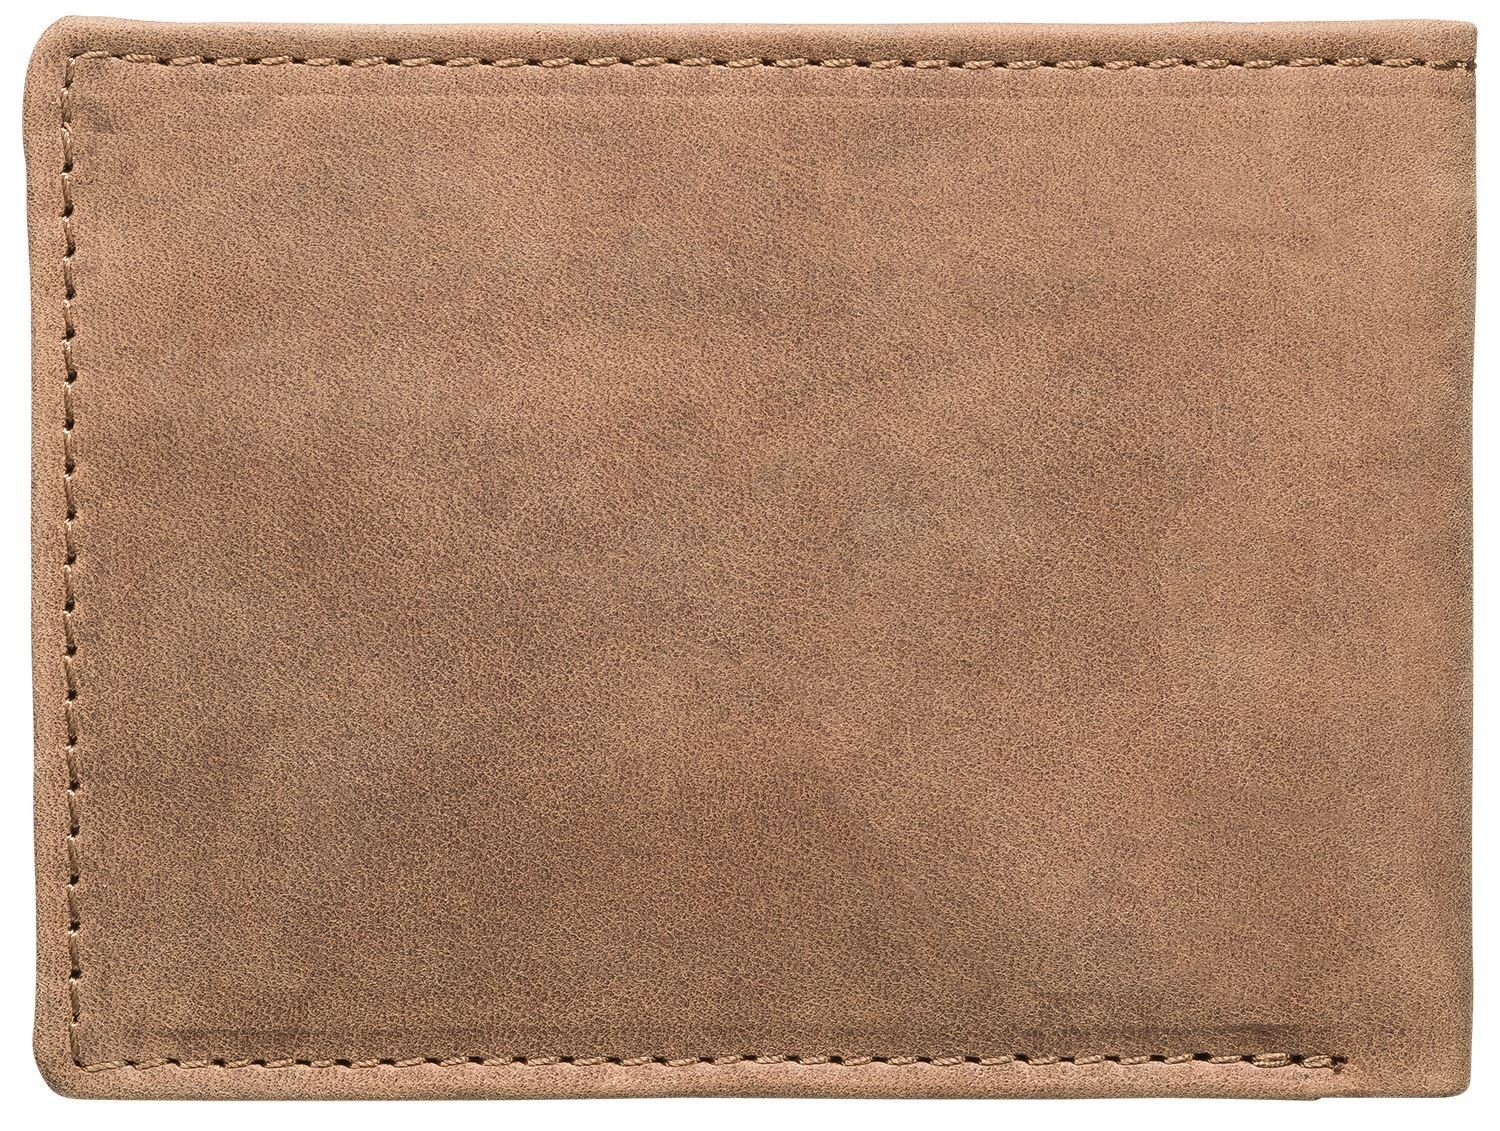 Münzfach 1-fach Kreditkartenfächer, Red RB-WT-001-05, Geldbörse mit klappbar, Baron Druckknopf